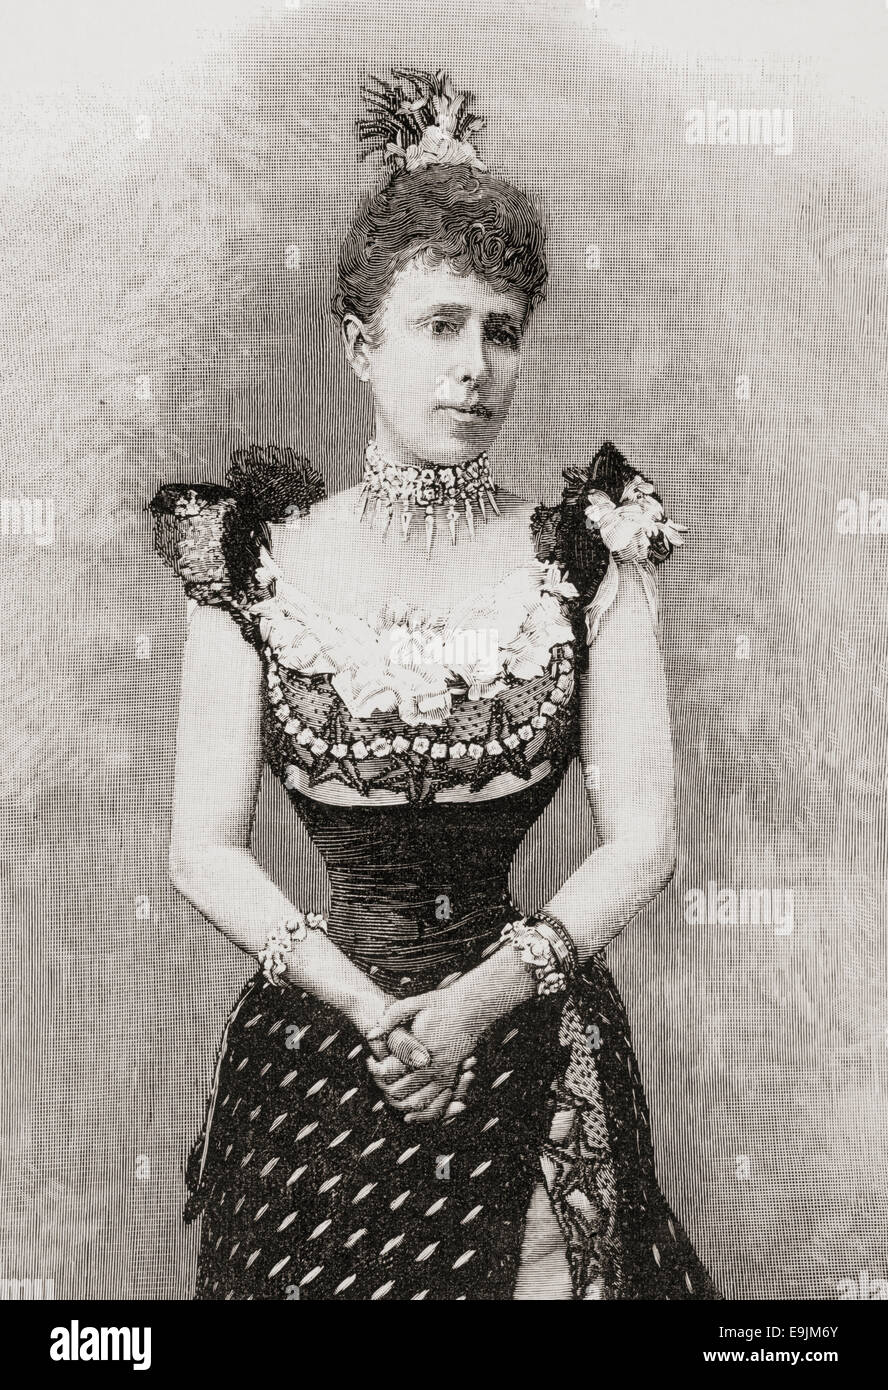 Maria Cristina Henriette Felicitas Desideria Raineria dell Austria, 1858 - 1929. La regina di Spagna come seconda moglie di Alfonso XII Foto Stock